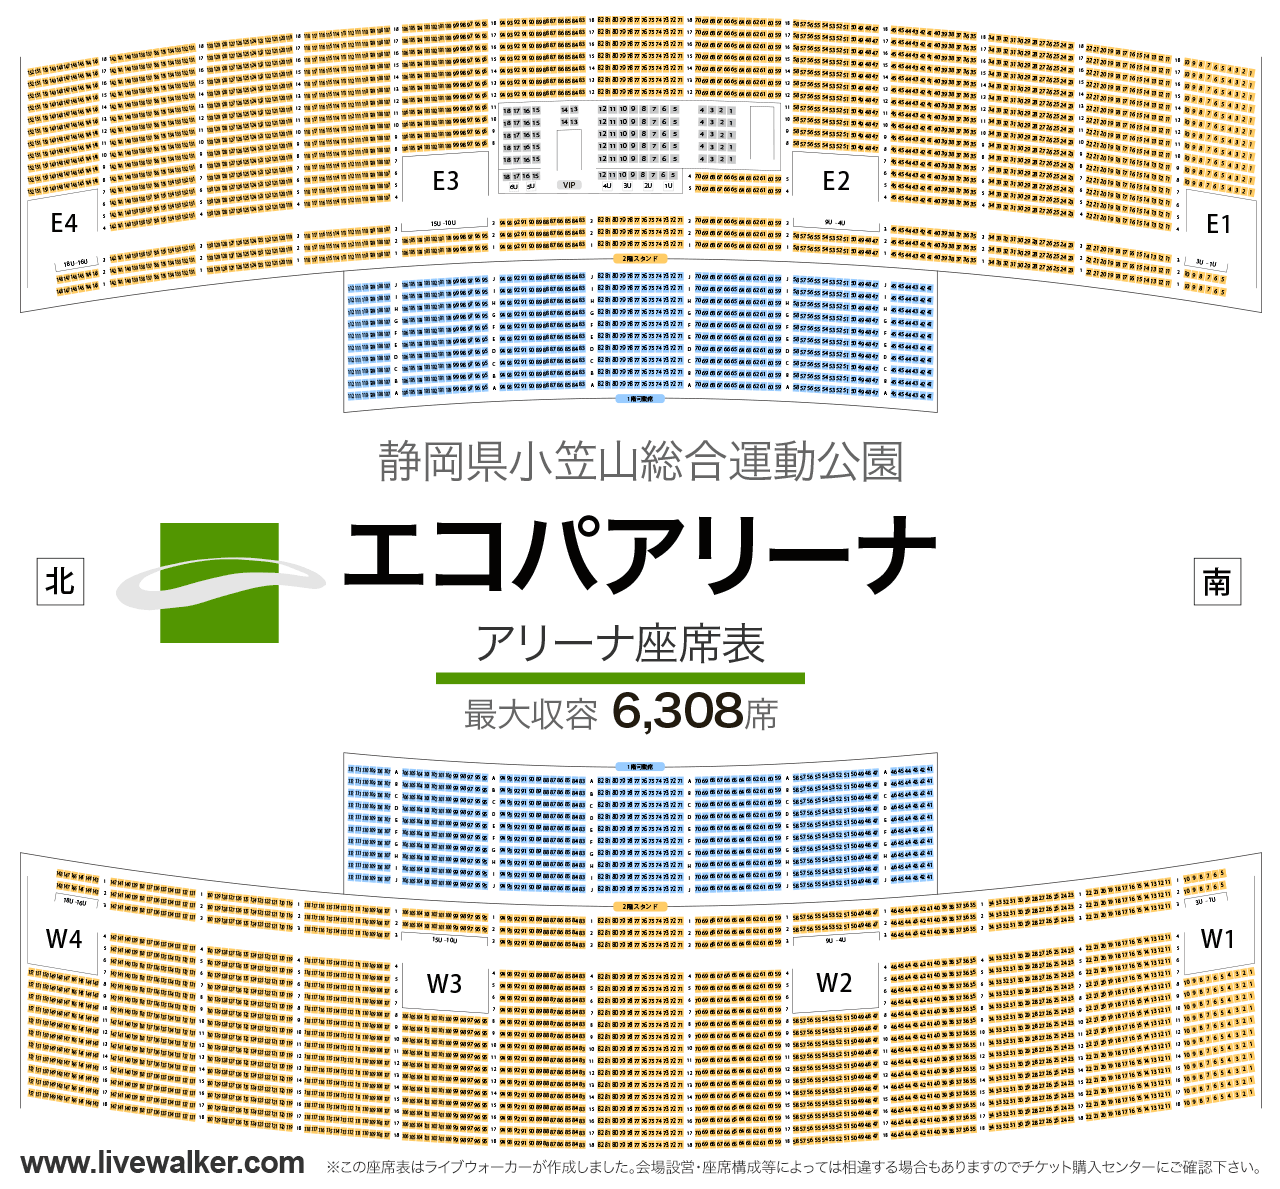 静岡エコパアリーナアリーナの座席表